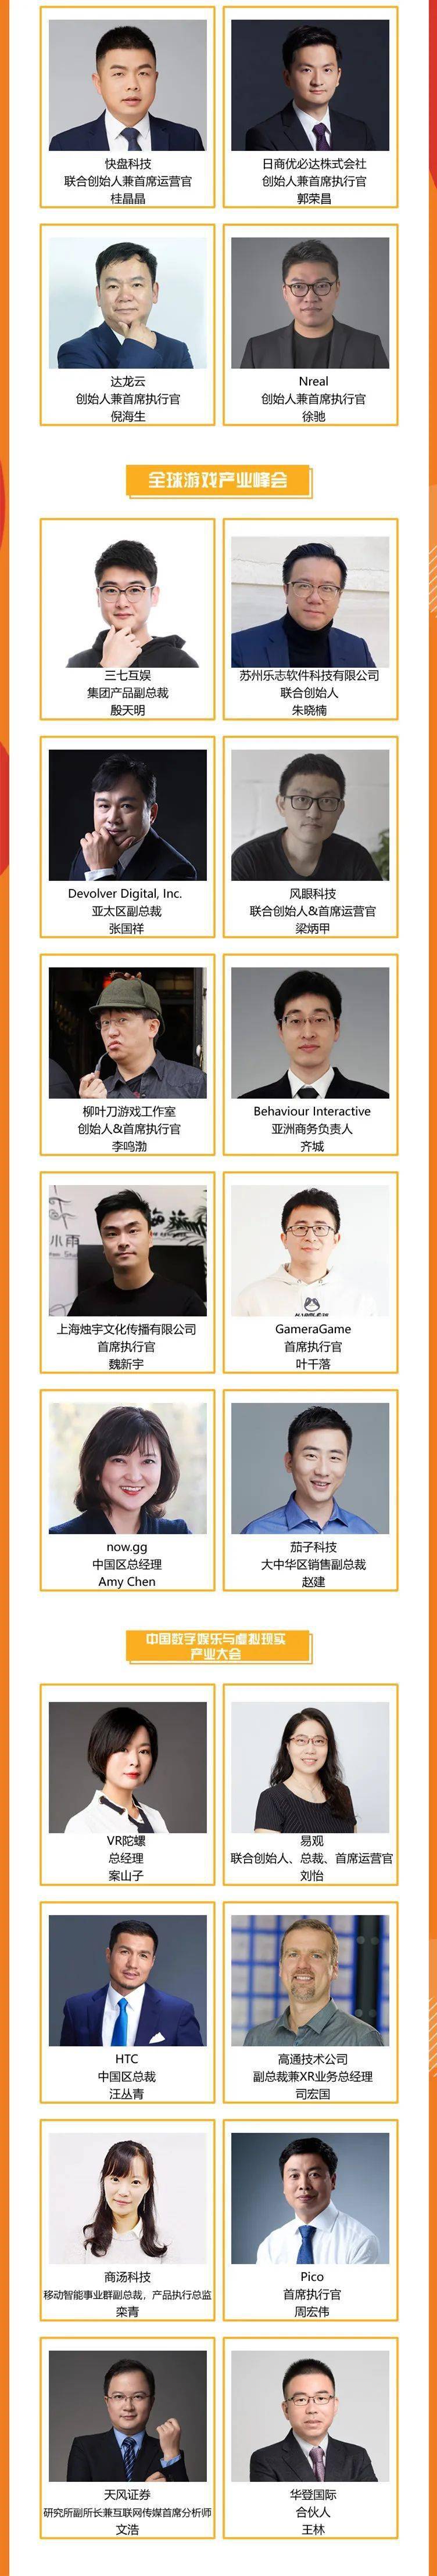 2021 年第十九届 ChinaJoy 展前预览（大型会议篇— CDEC）正式发布！